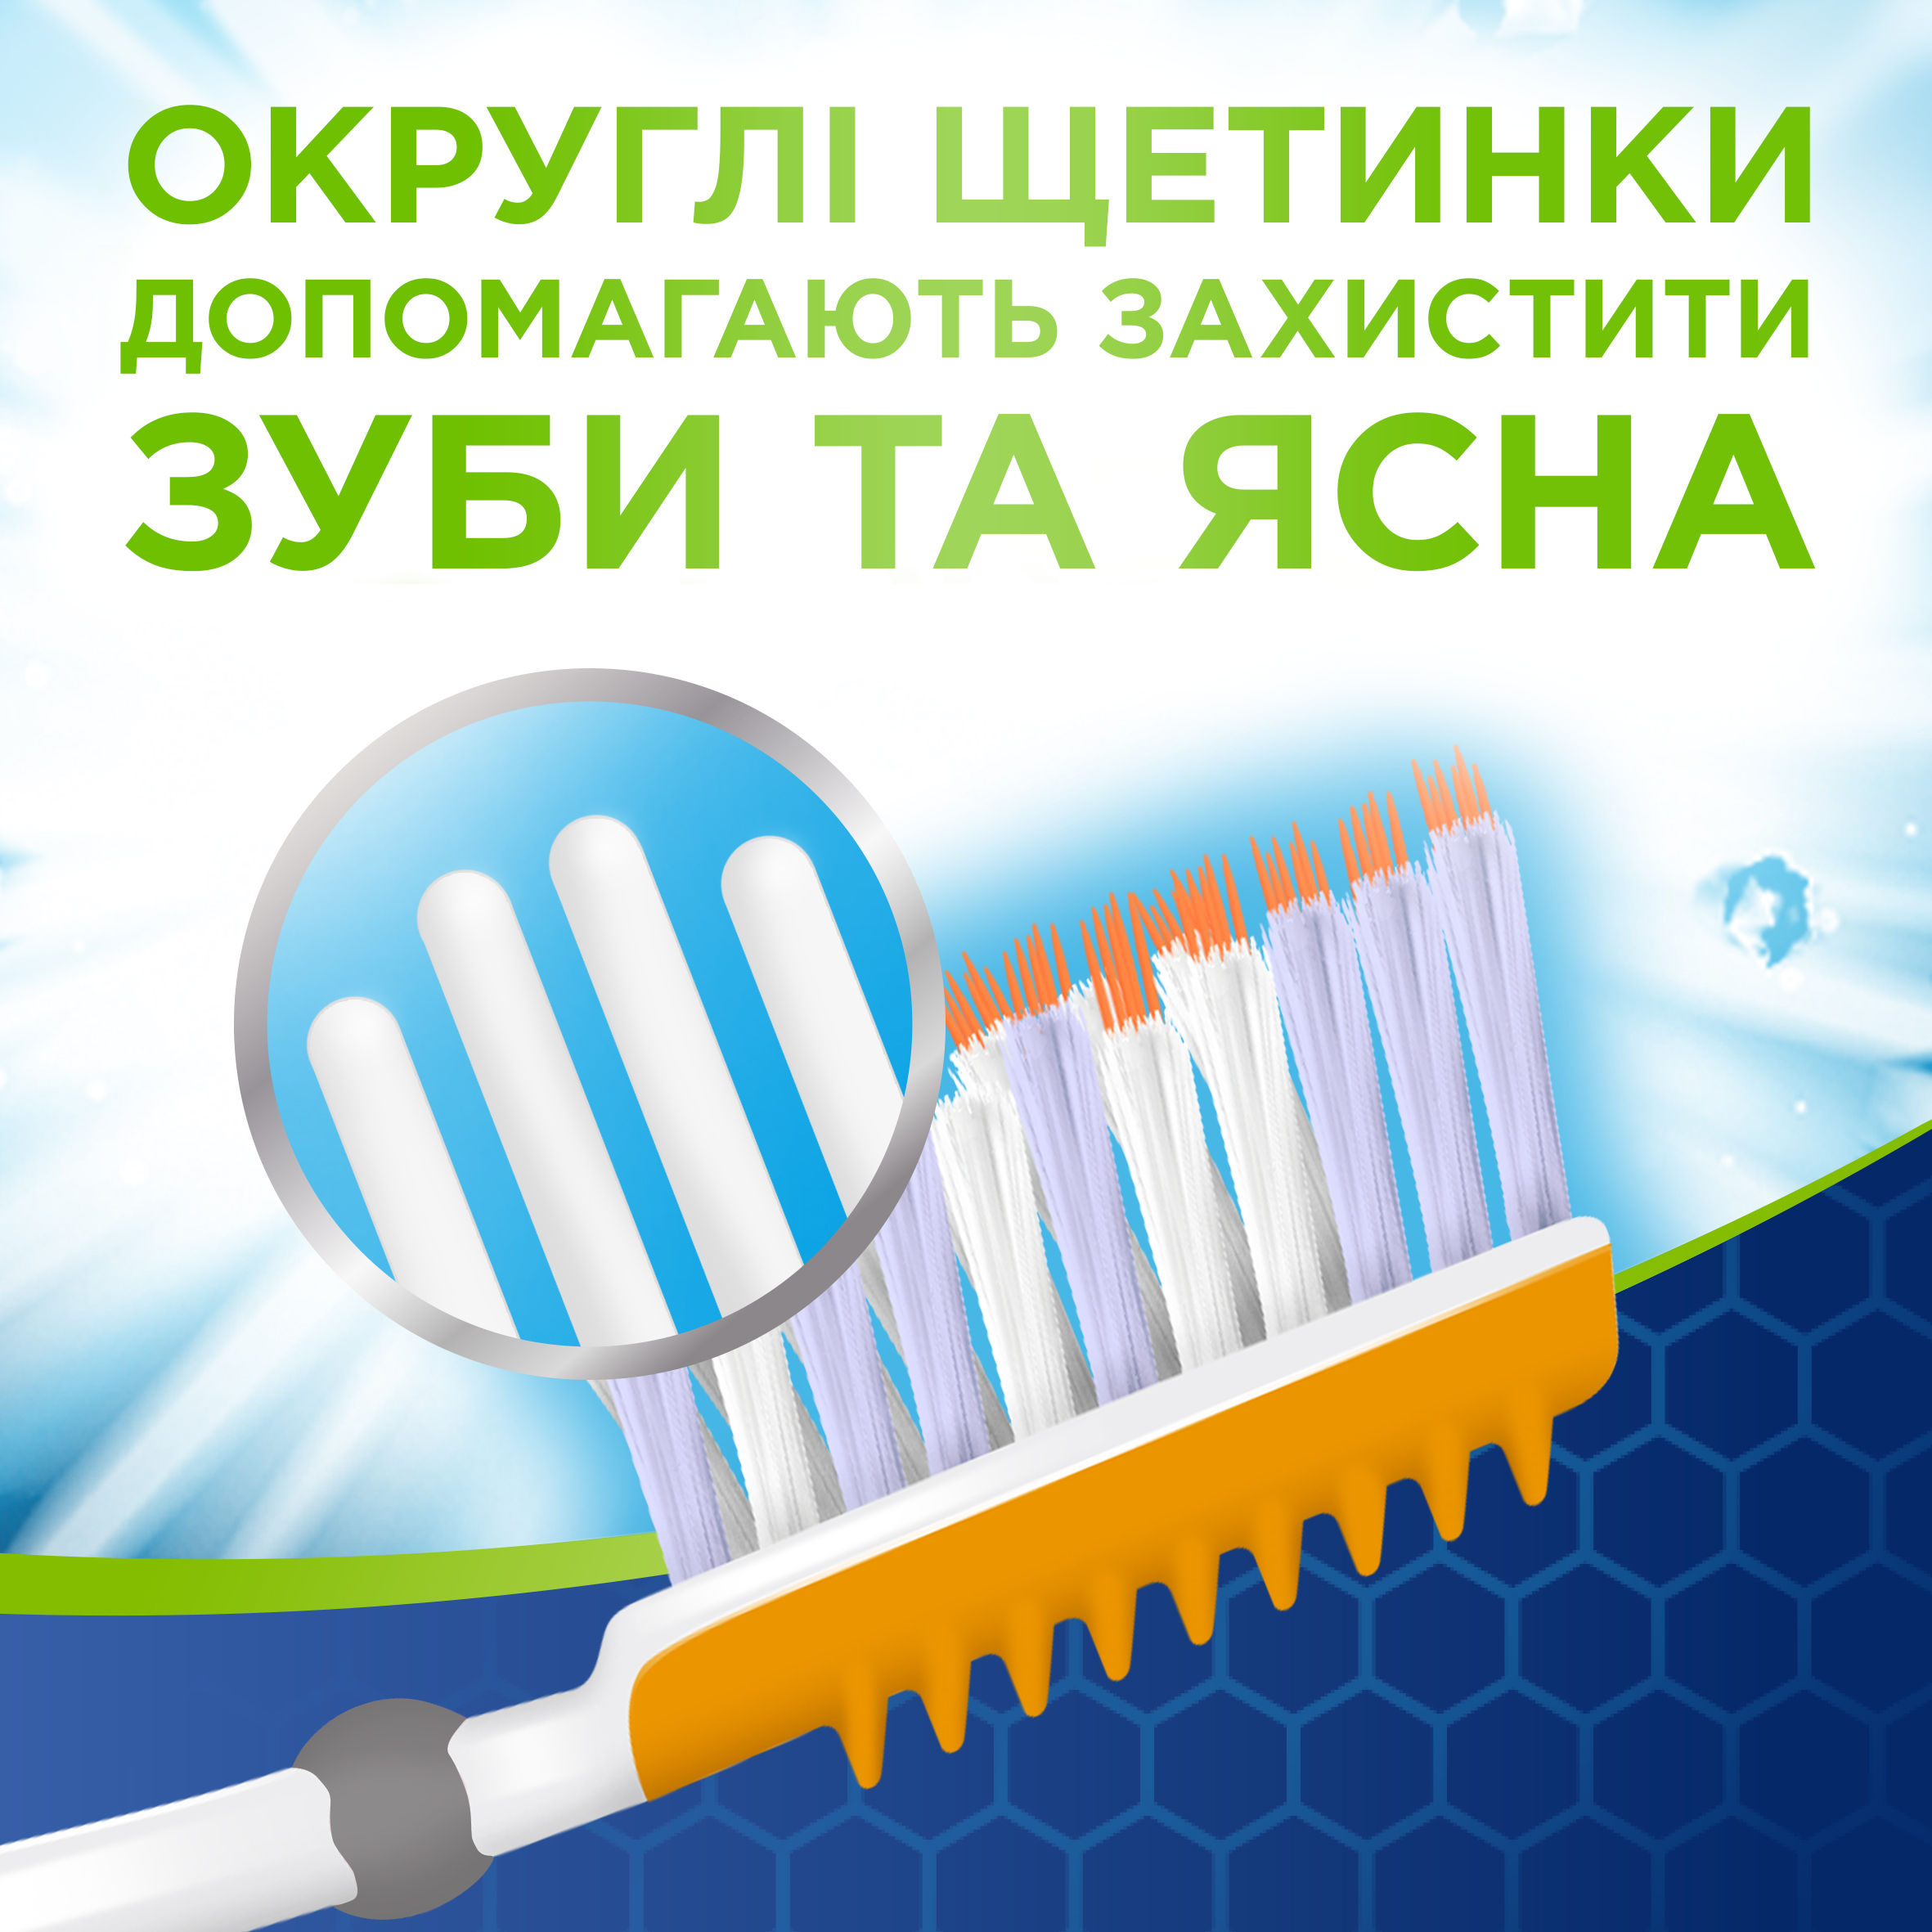 Зубна щітка Aquafresh Extreme Clean Medium 1+1, середня, в ассортименті, 2 шт. - фото 7